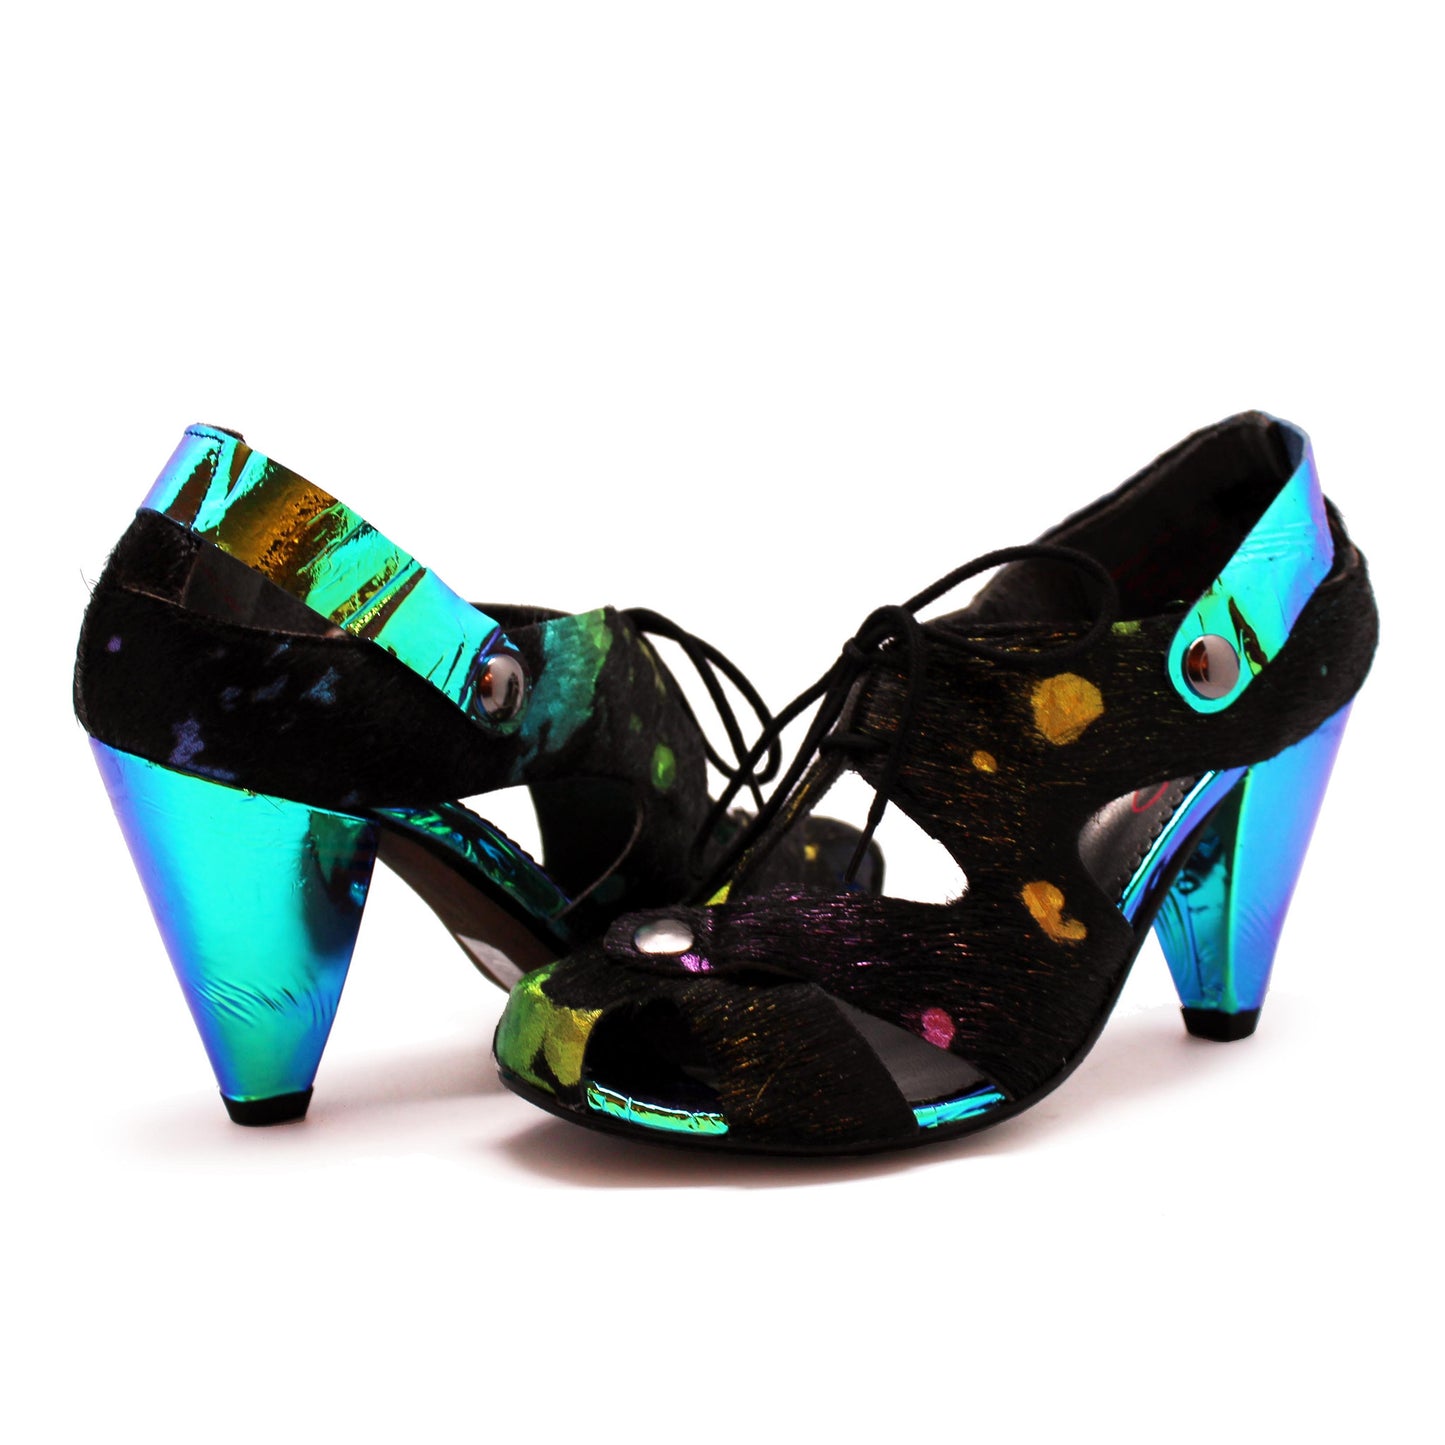 Coco - Black Rainbow Unicorn heel shoe